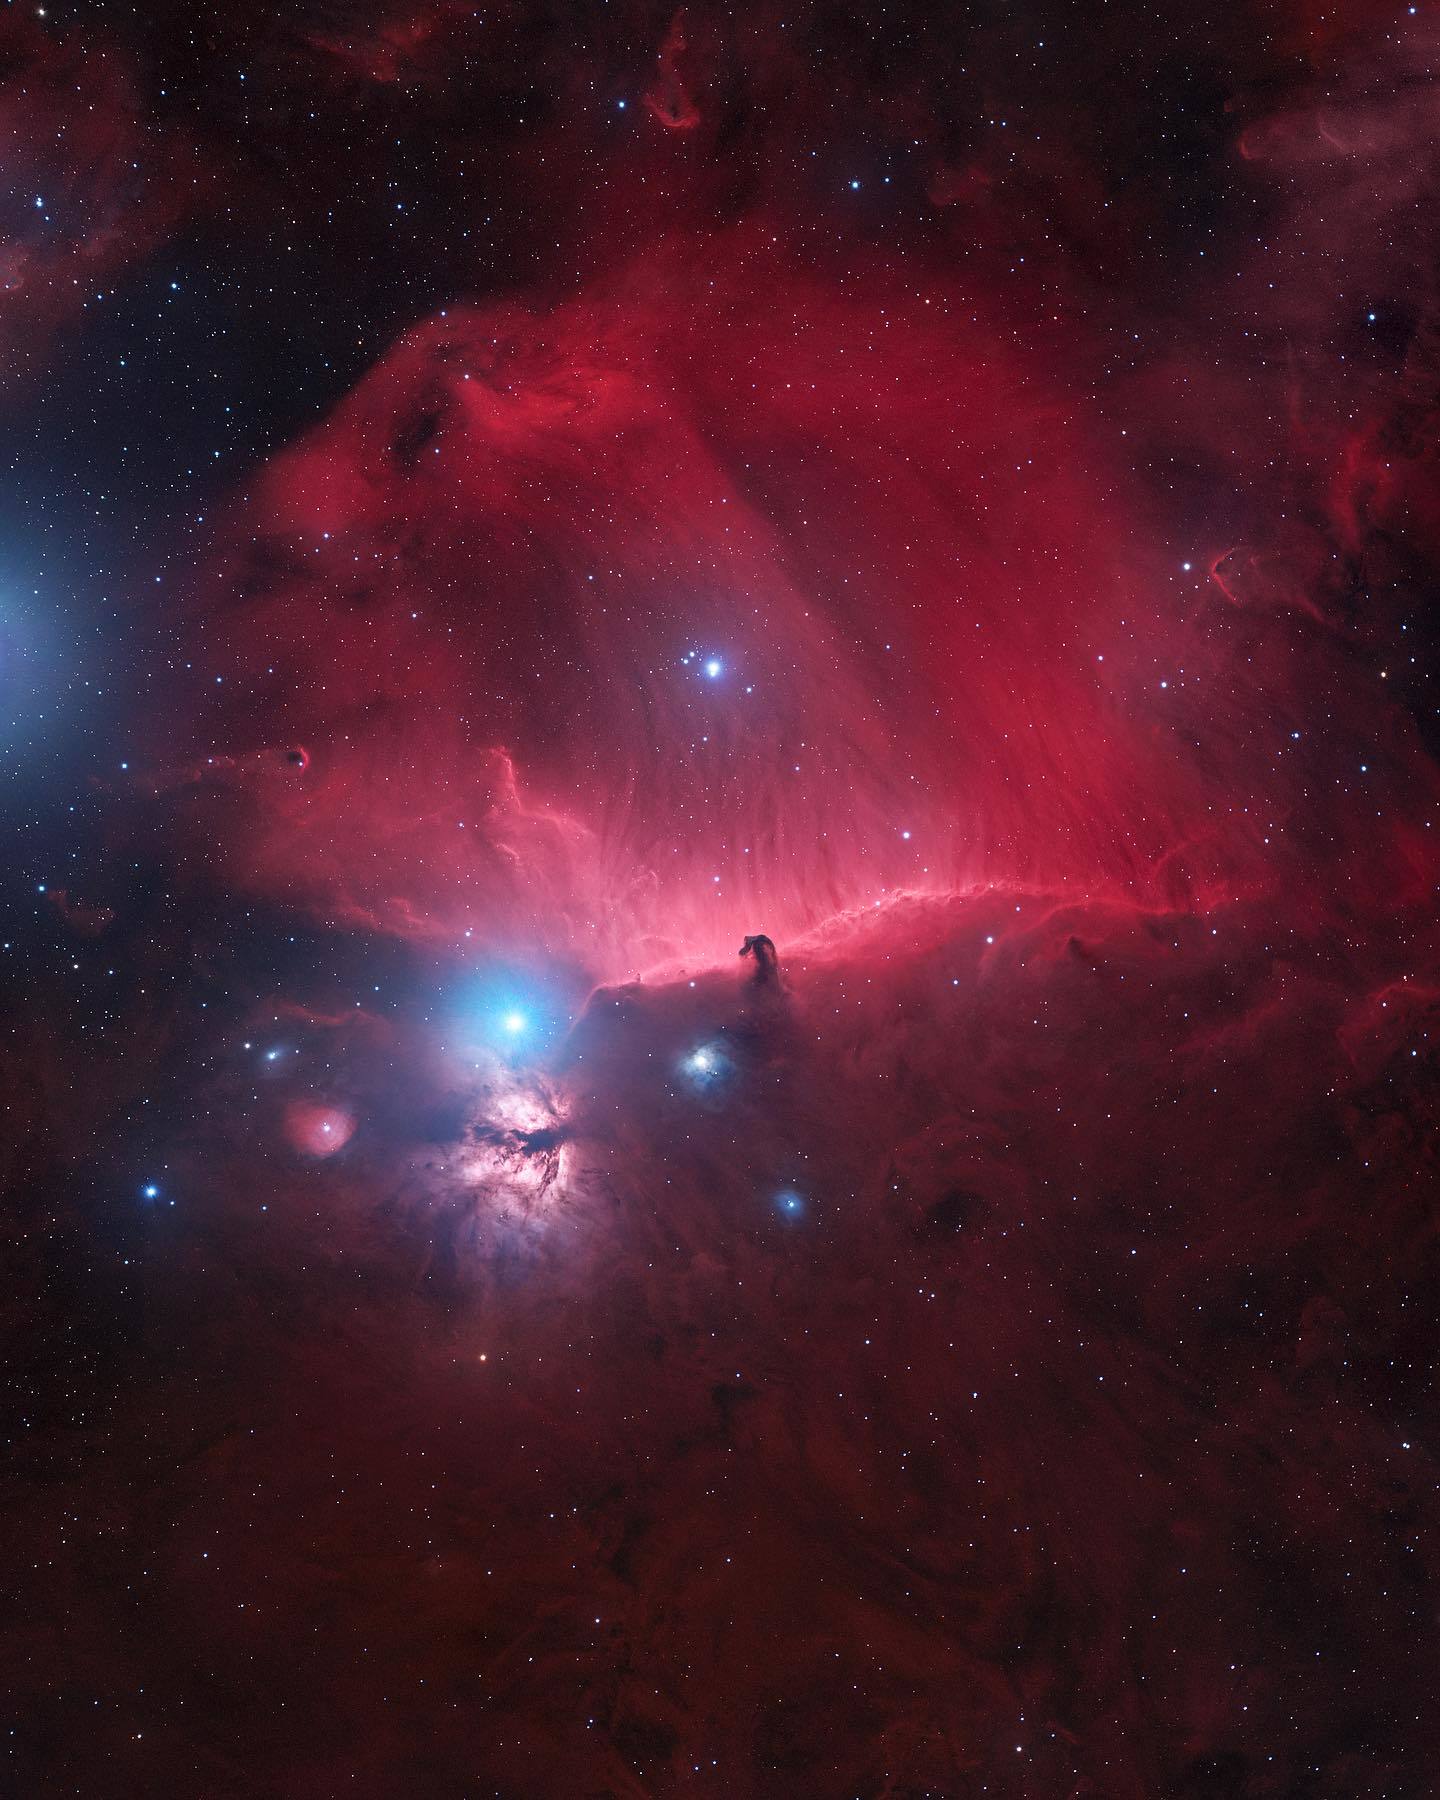  马头星云（马头星云位于猎户座，也称为巴纳德33，在发射星云IC 434之内，是一个暗星云。这个星云就在猎户腰带最东边的参宿一南方，并且是非常巨大的猎户座分子云团的一部分。马头星云距离地球大约1,500光年），来自摄影师Bray Falls。 